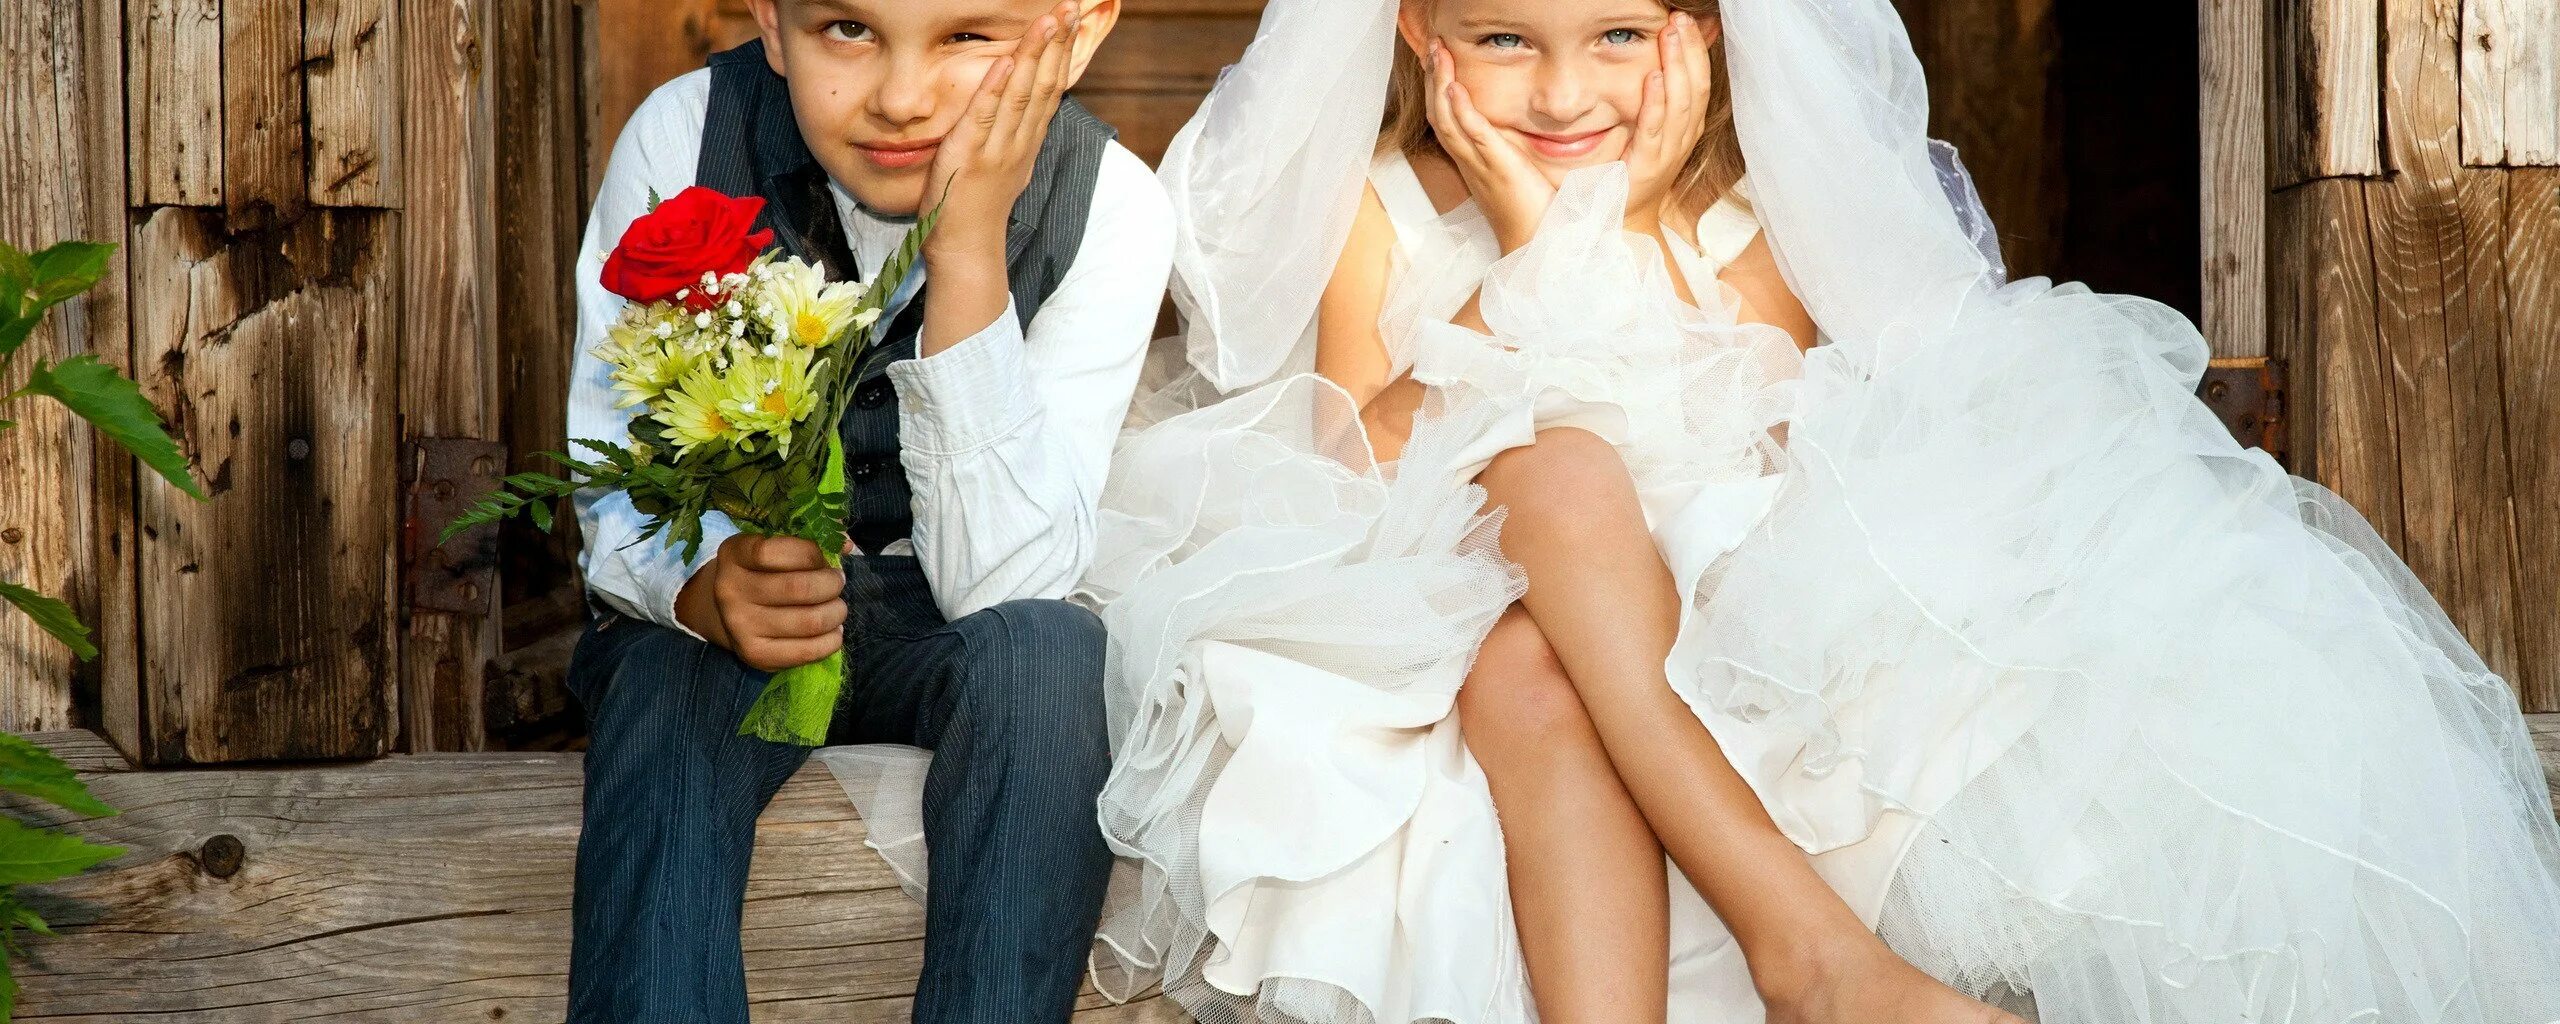 Ранние браки. Подростки на свадьбе. Ранняя свадьба. Невесты разного возраста.